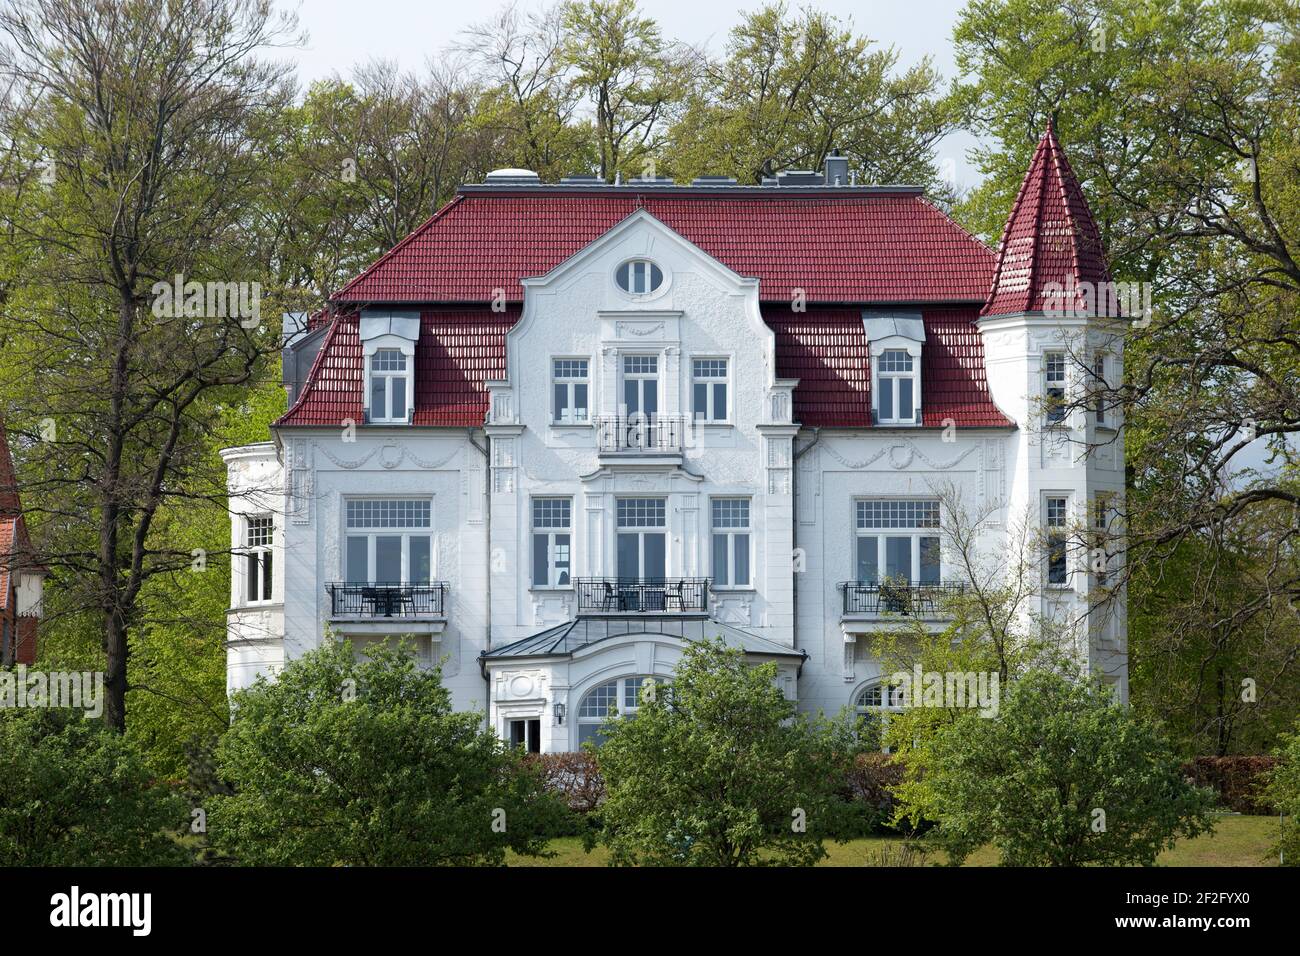 Villa Staudt, Heringsdorf, île d'Usedom, côte de mer Baltique, Mecklenburg-Ouest Pomerania, Allemagne Banque D'Images